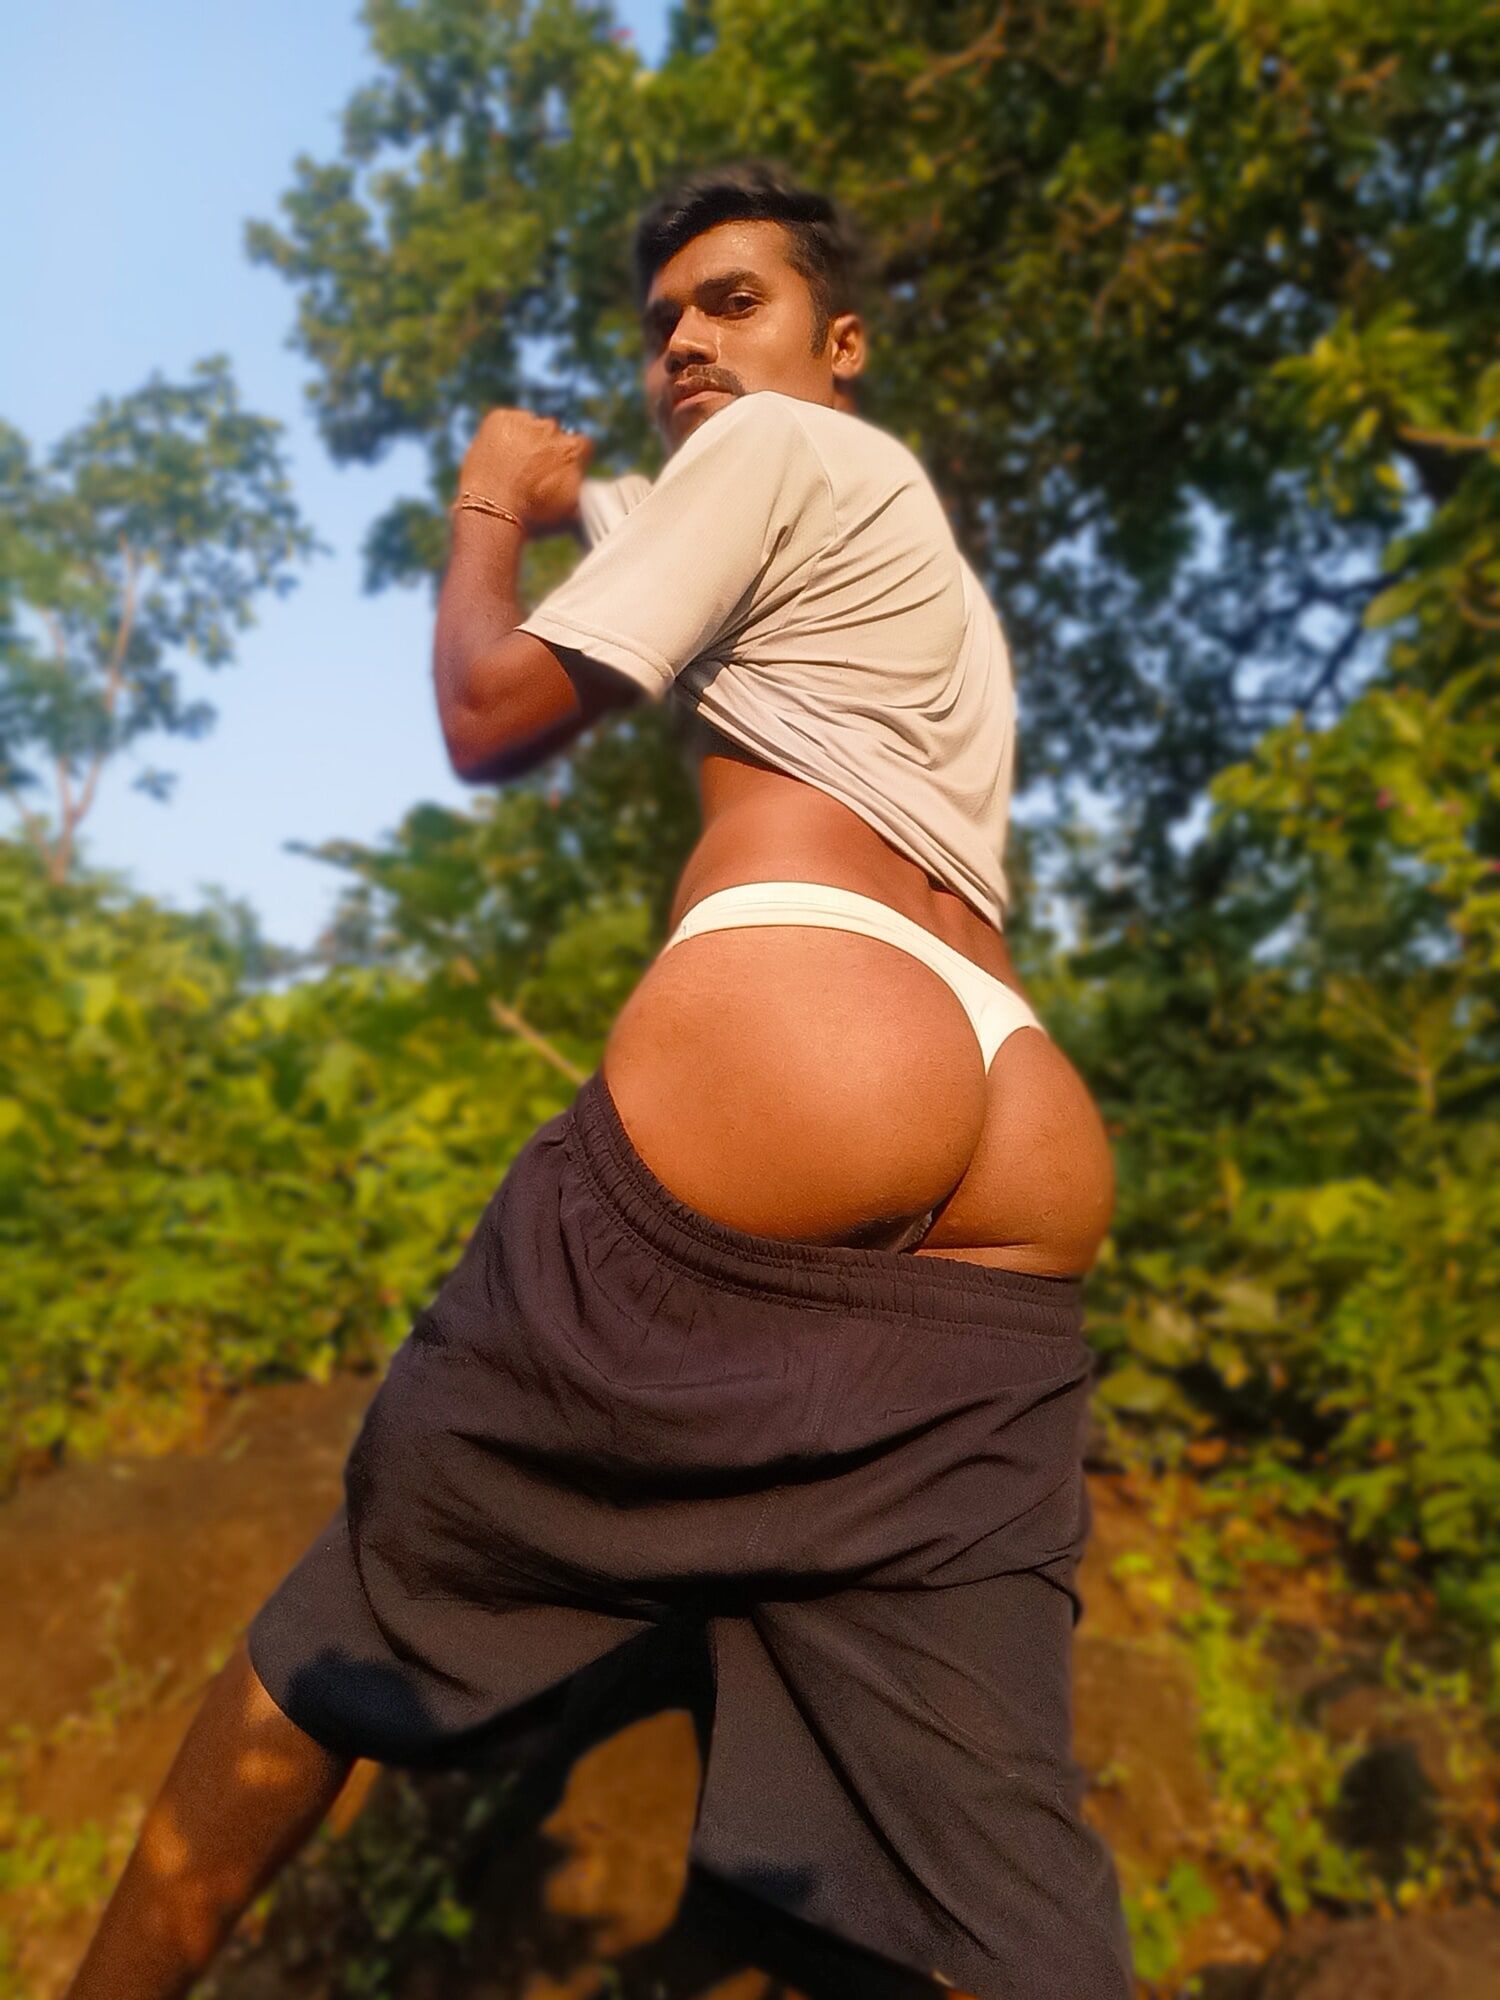 Brown hotboy jordiweek nude big Ass #4